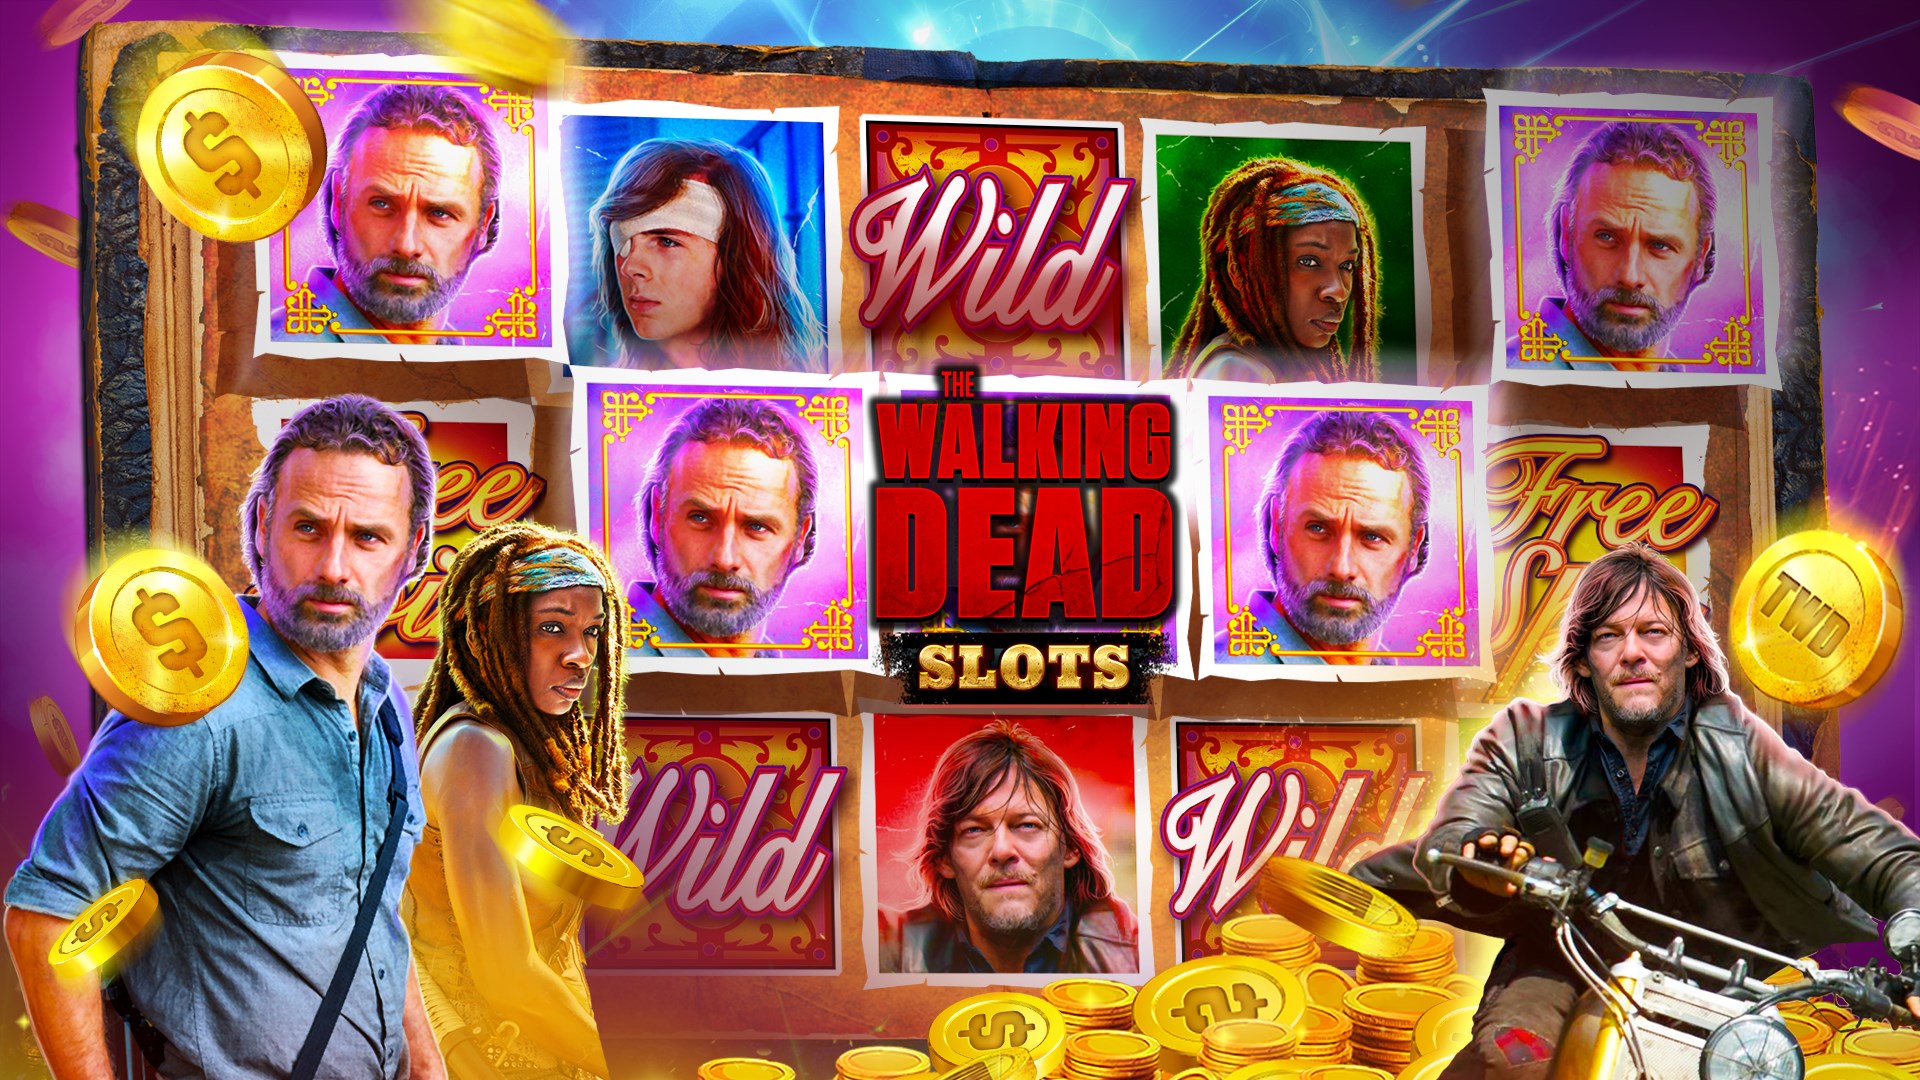 The walking dead slot machine app free